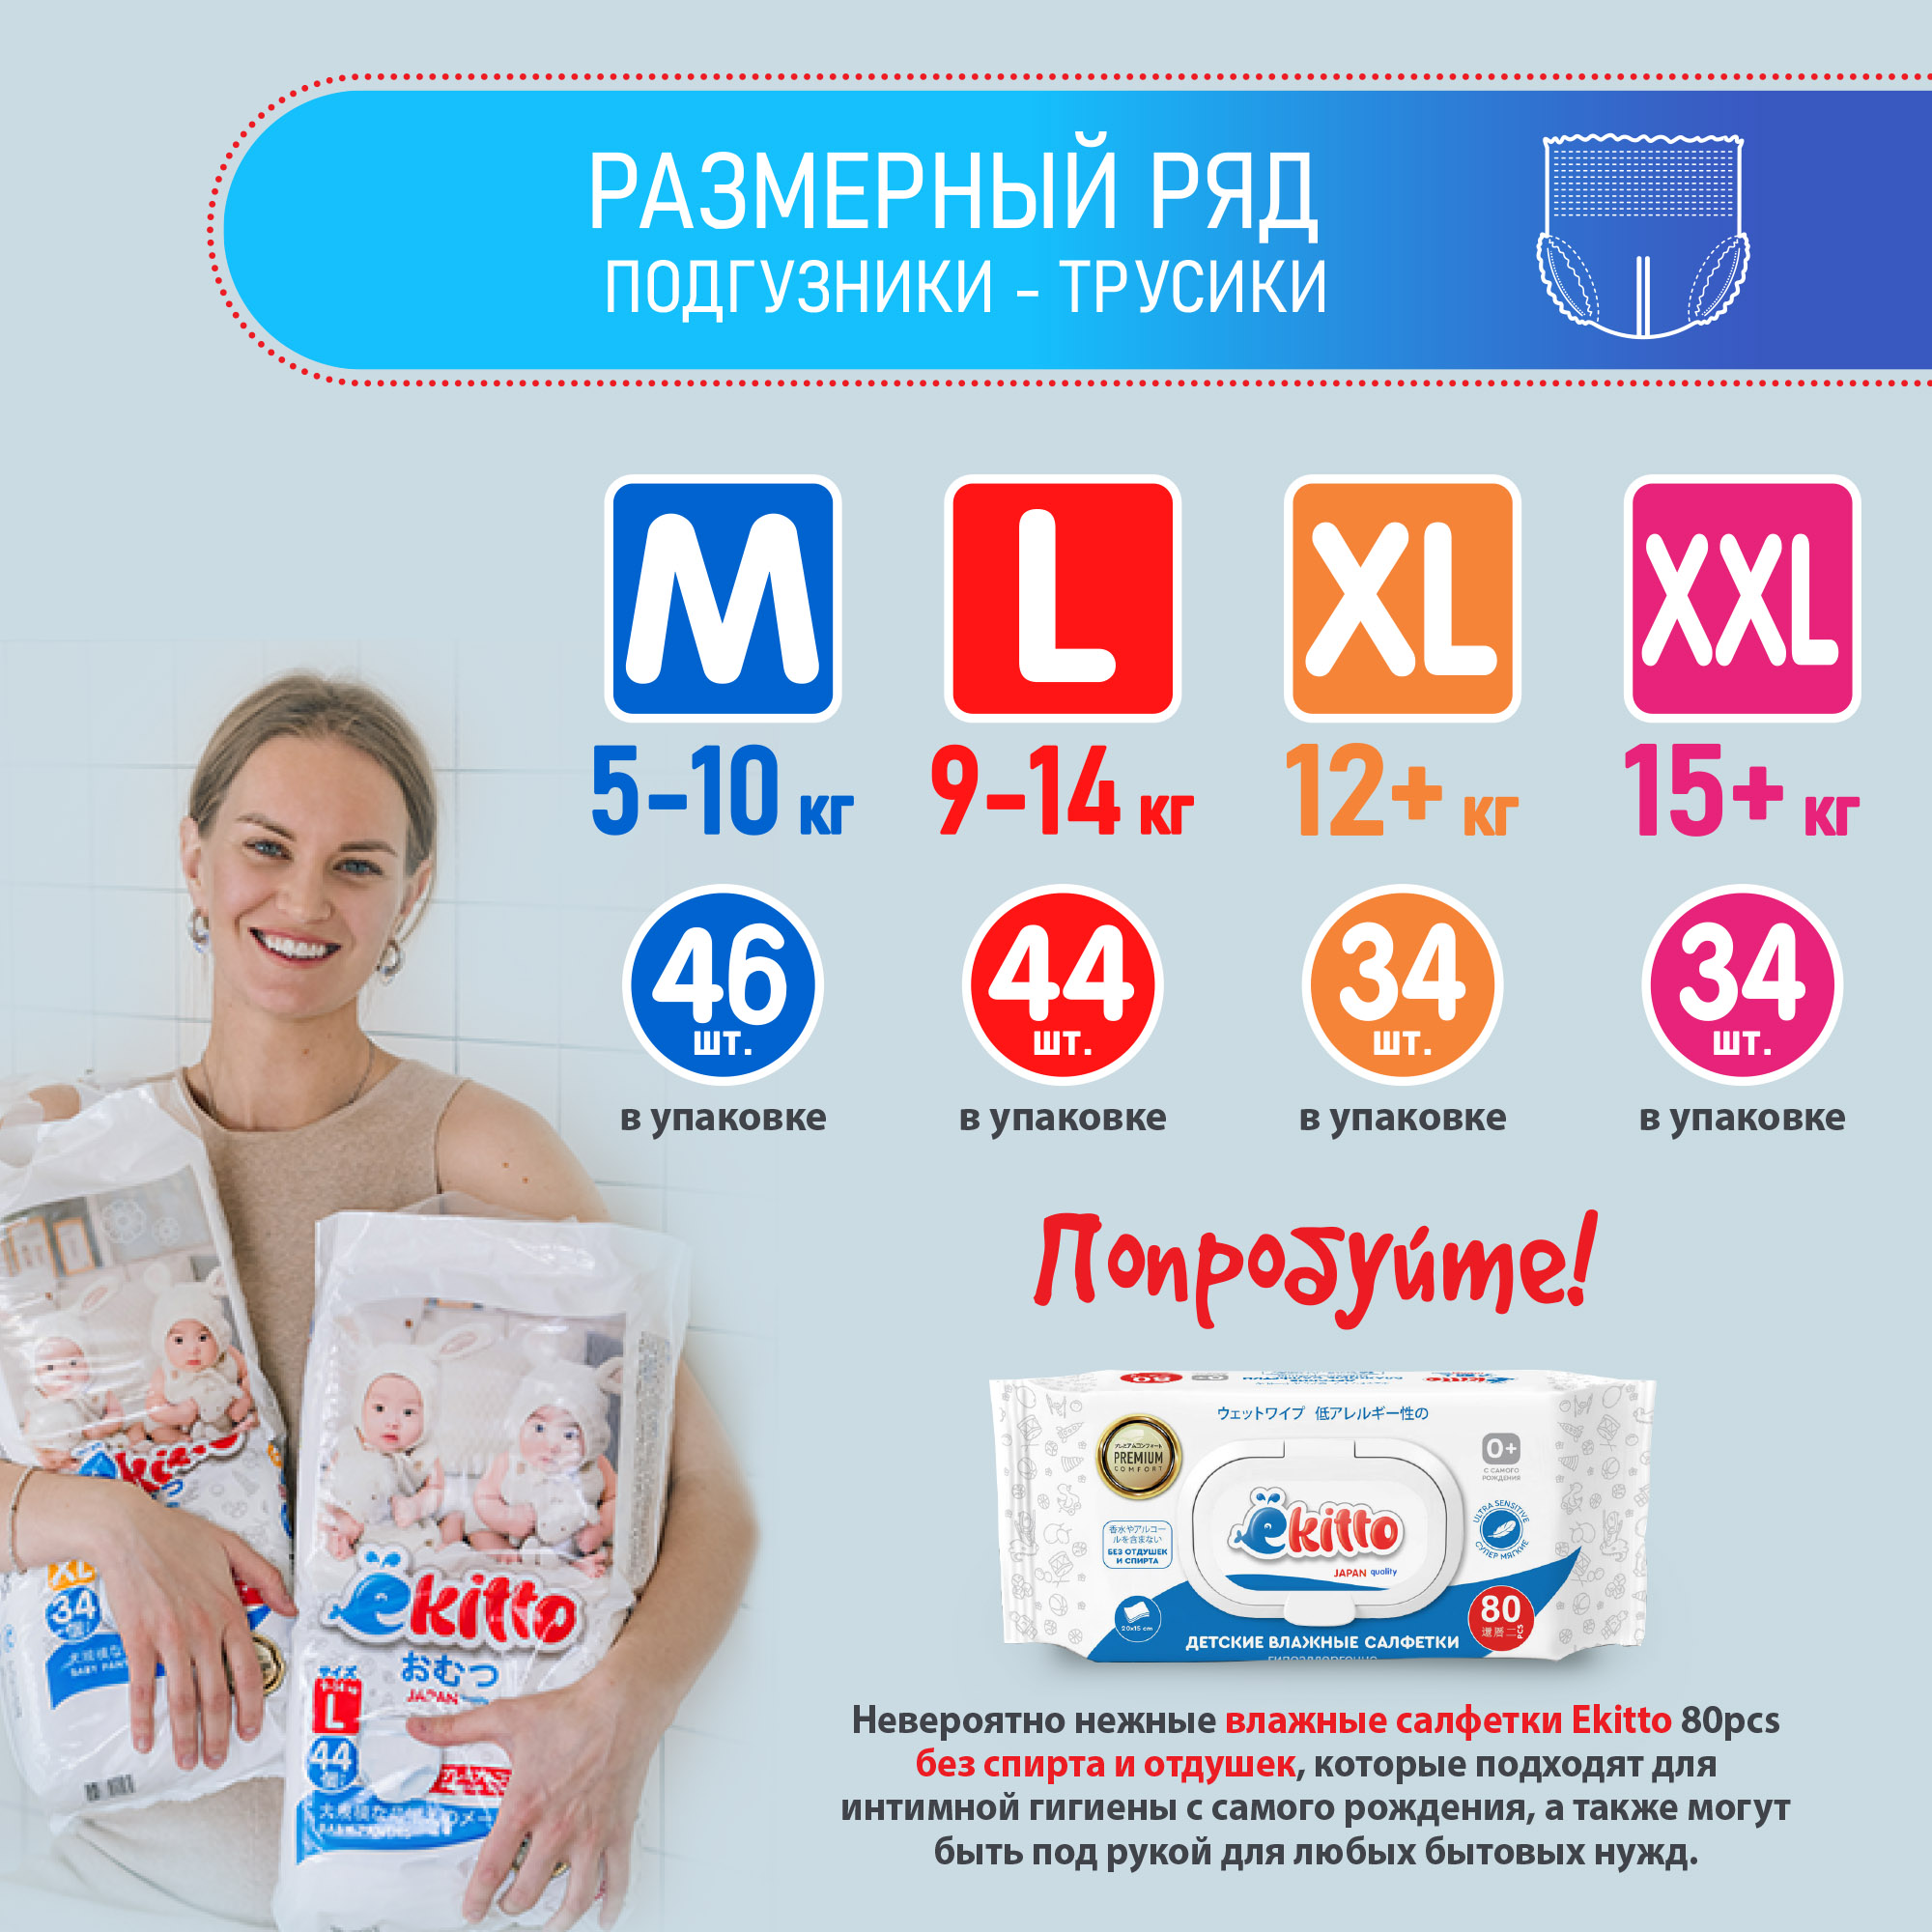 Подгузники-трусики Ekitto 6 размер XXL для новорожденных детей от 15-20 кг 34 шт - фото 9